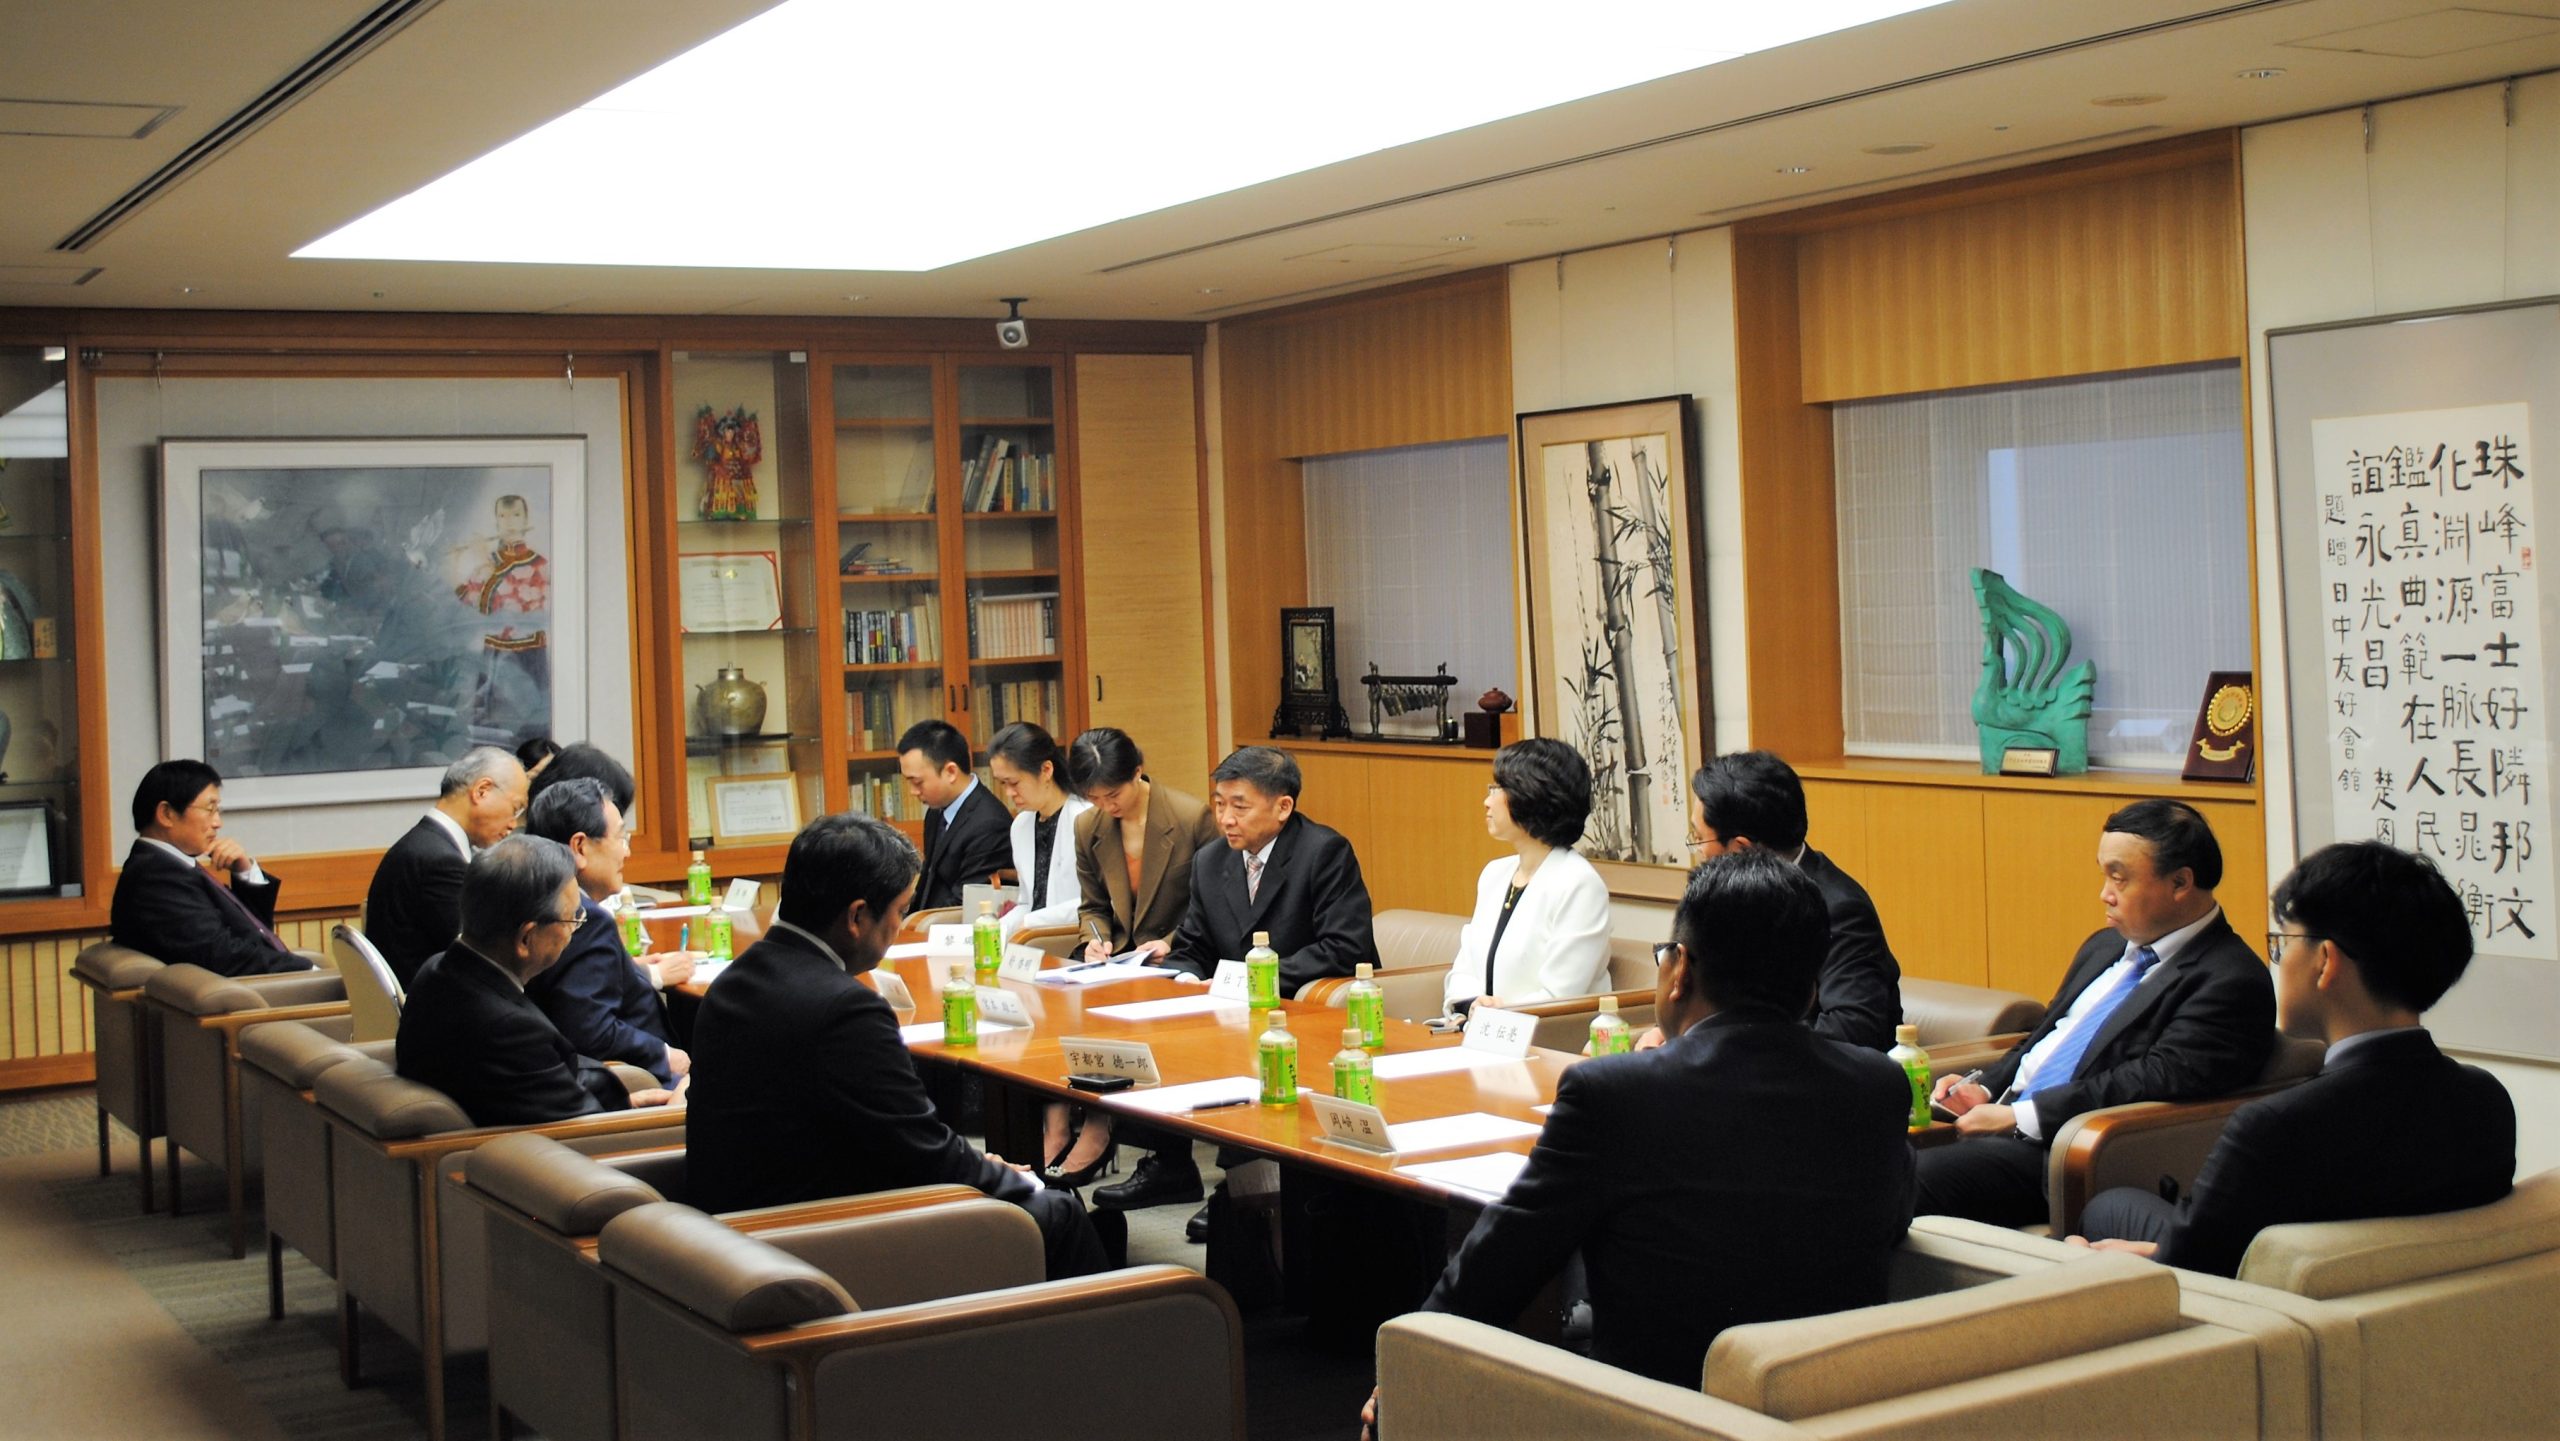 中国共産党代表団との懇談会を開催しました - 公益社団法人 日本中国